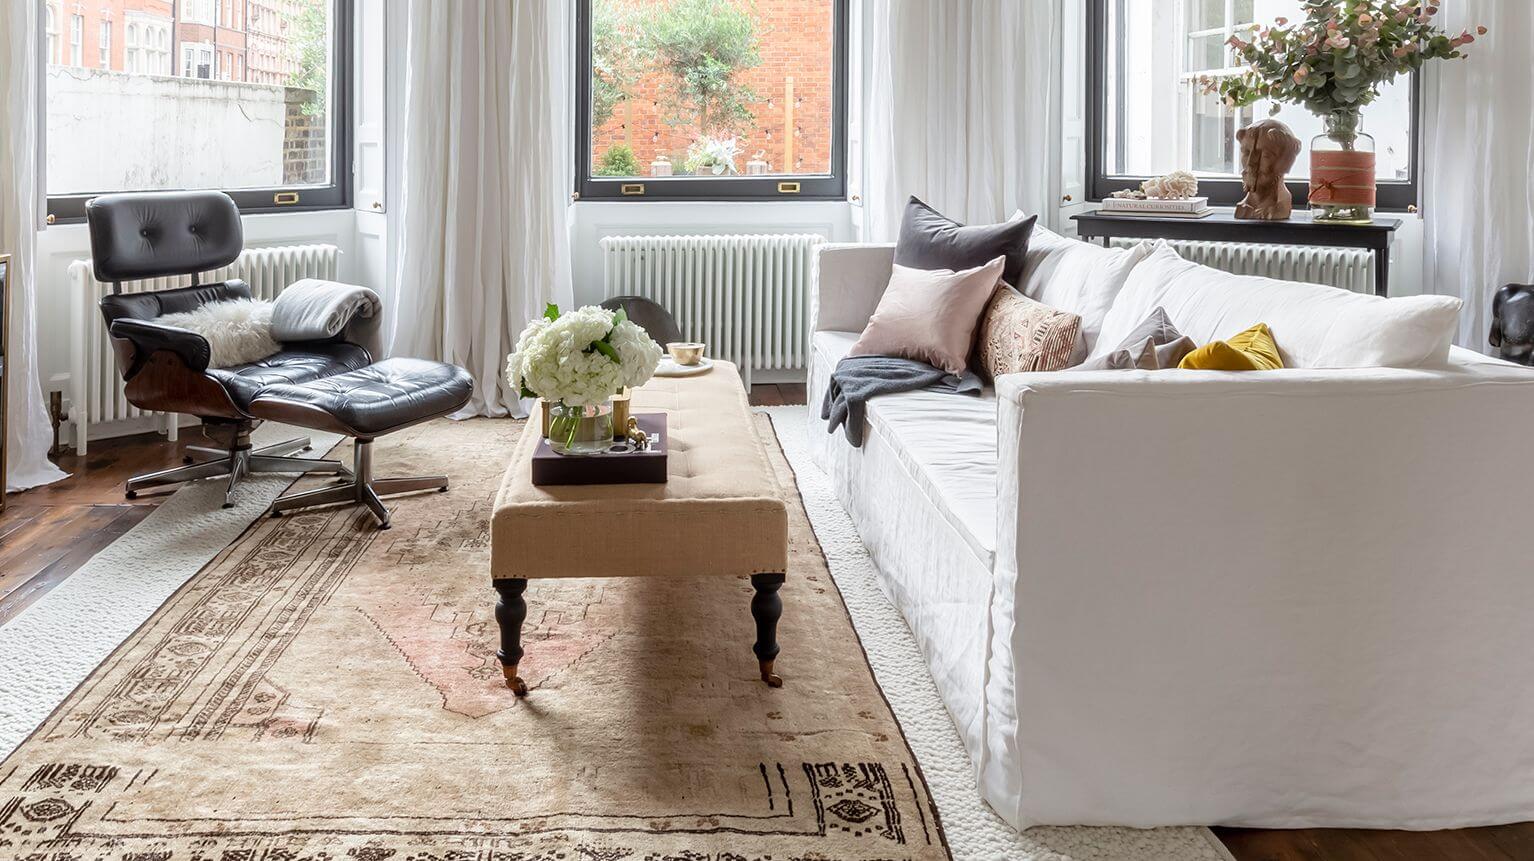 Living con tres ventanas, una alfombra color arena al centro y sobre ella hay un sofá blanco decorado con cojines y mantas, una mesa de centro color beige y una poltrona negra con detalles de madera.